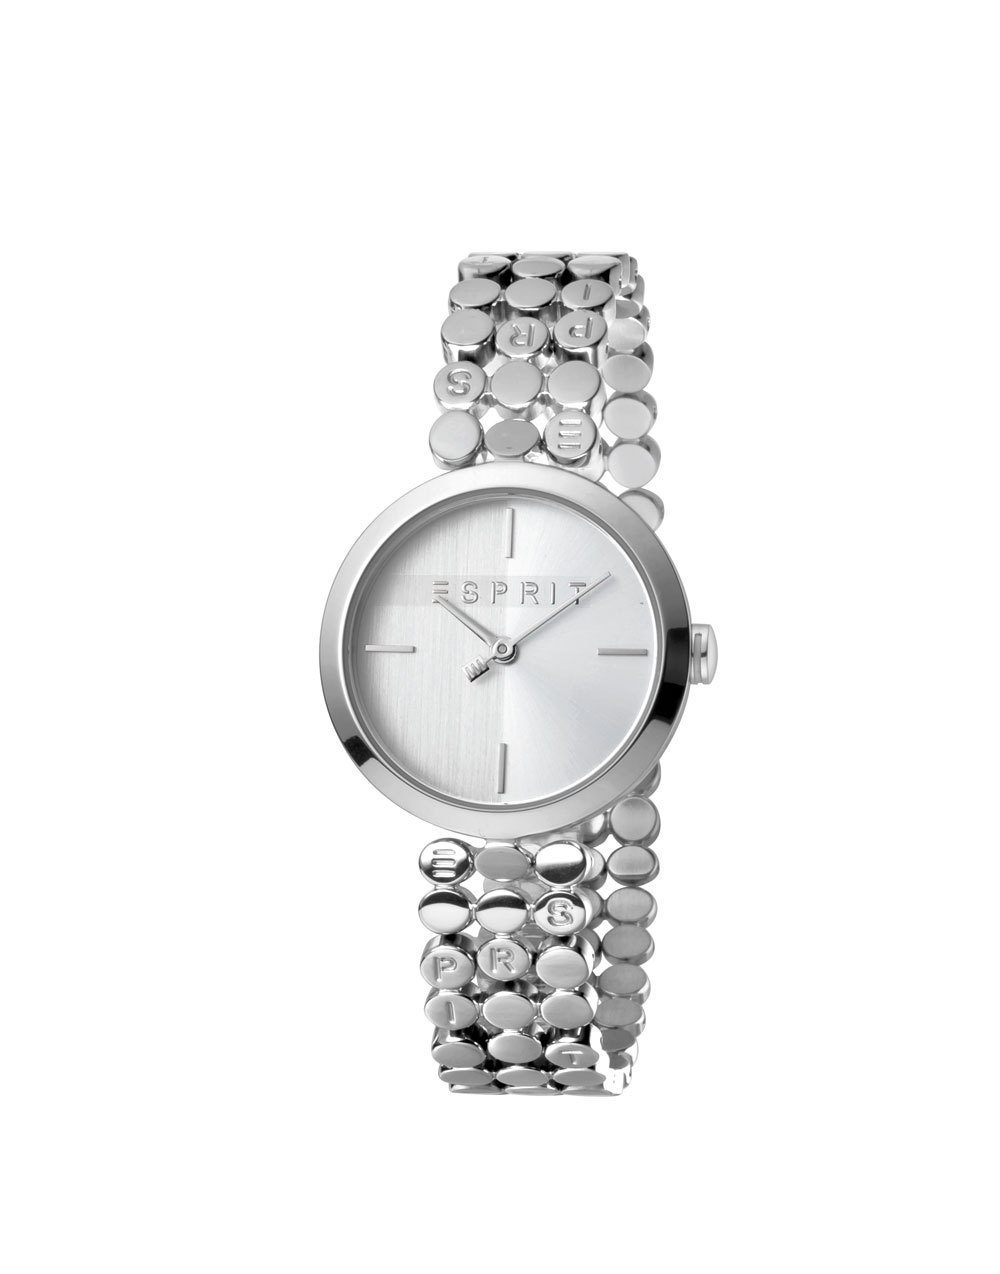 Esprit ES1L018M0015 Bliss Silver horloge